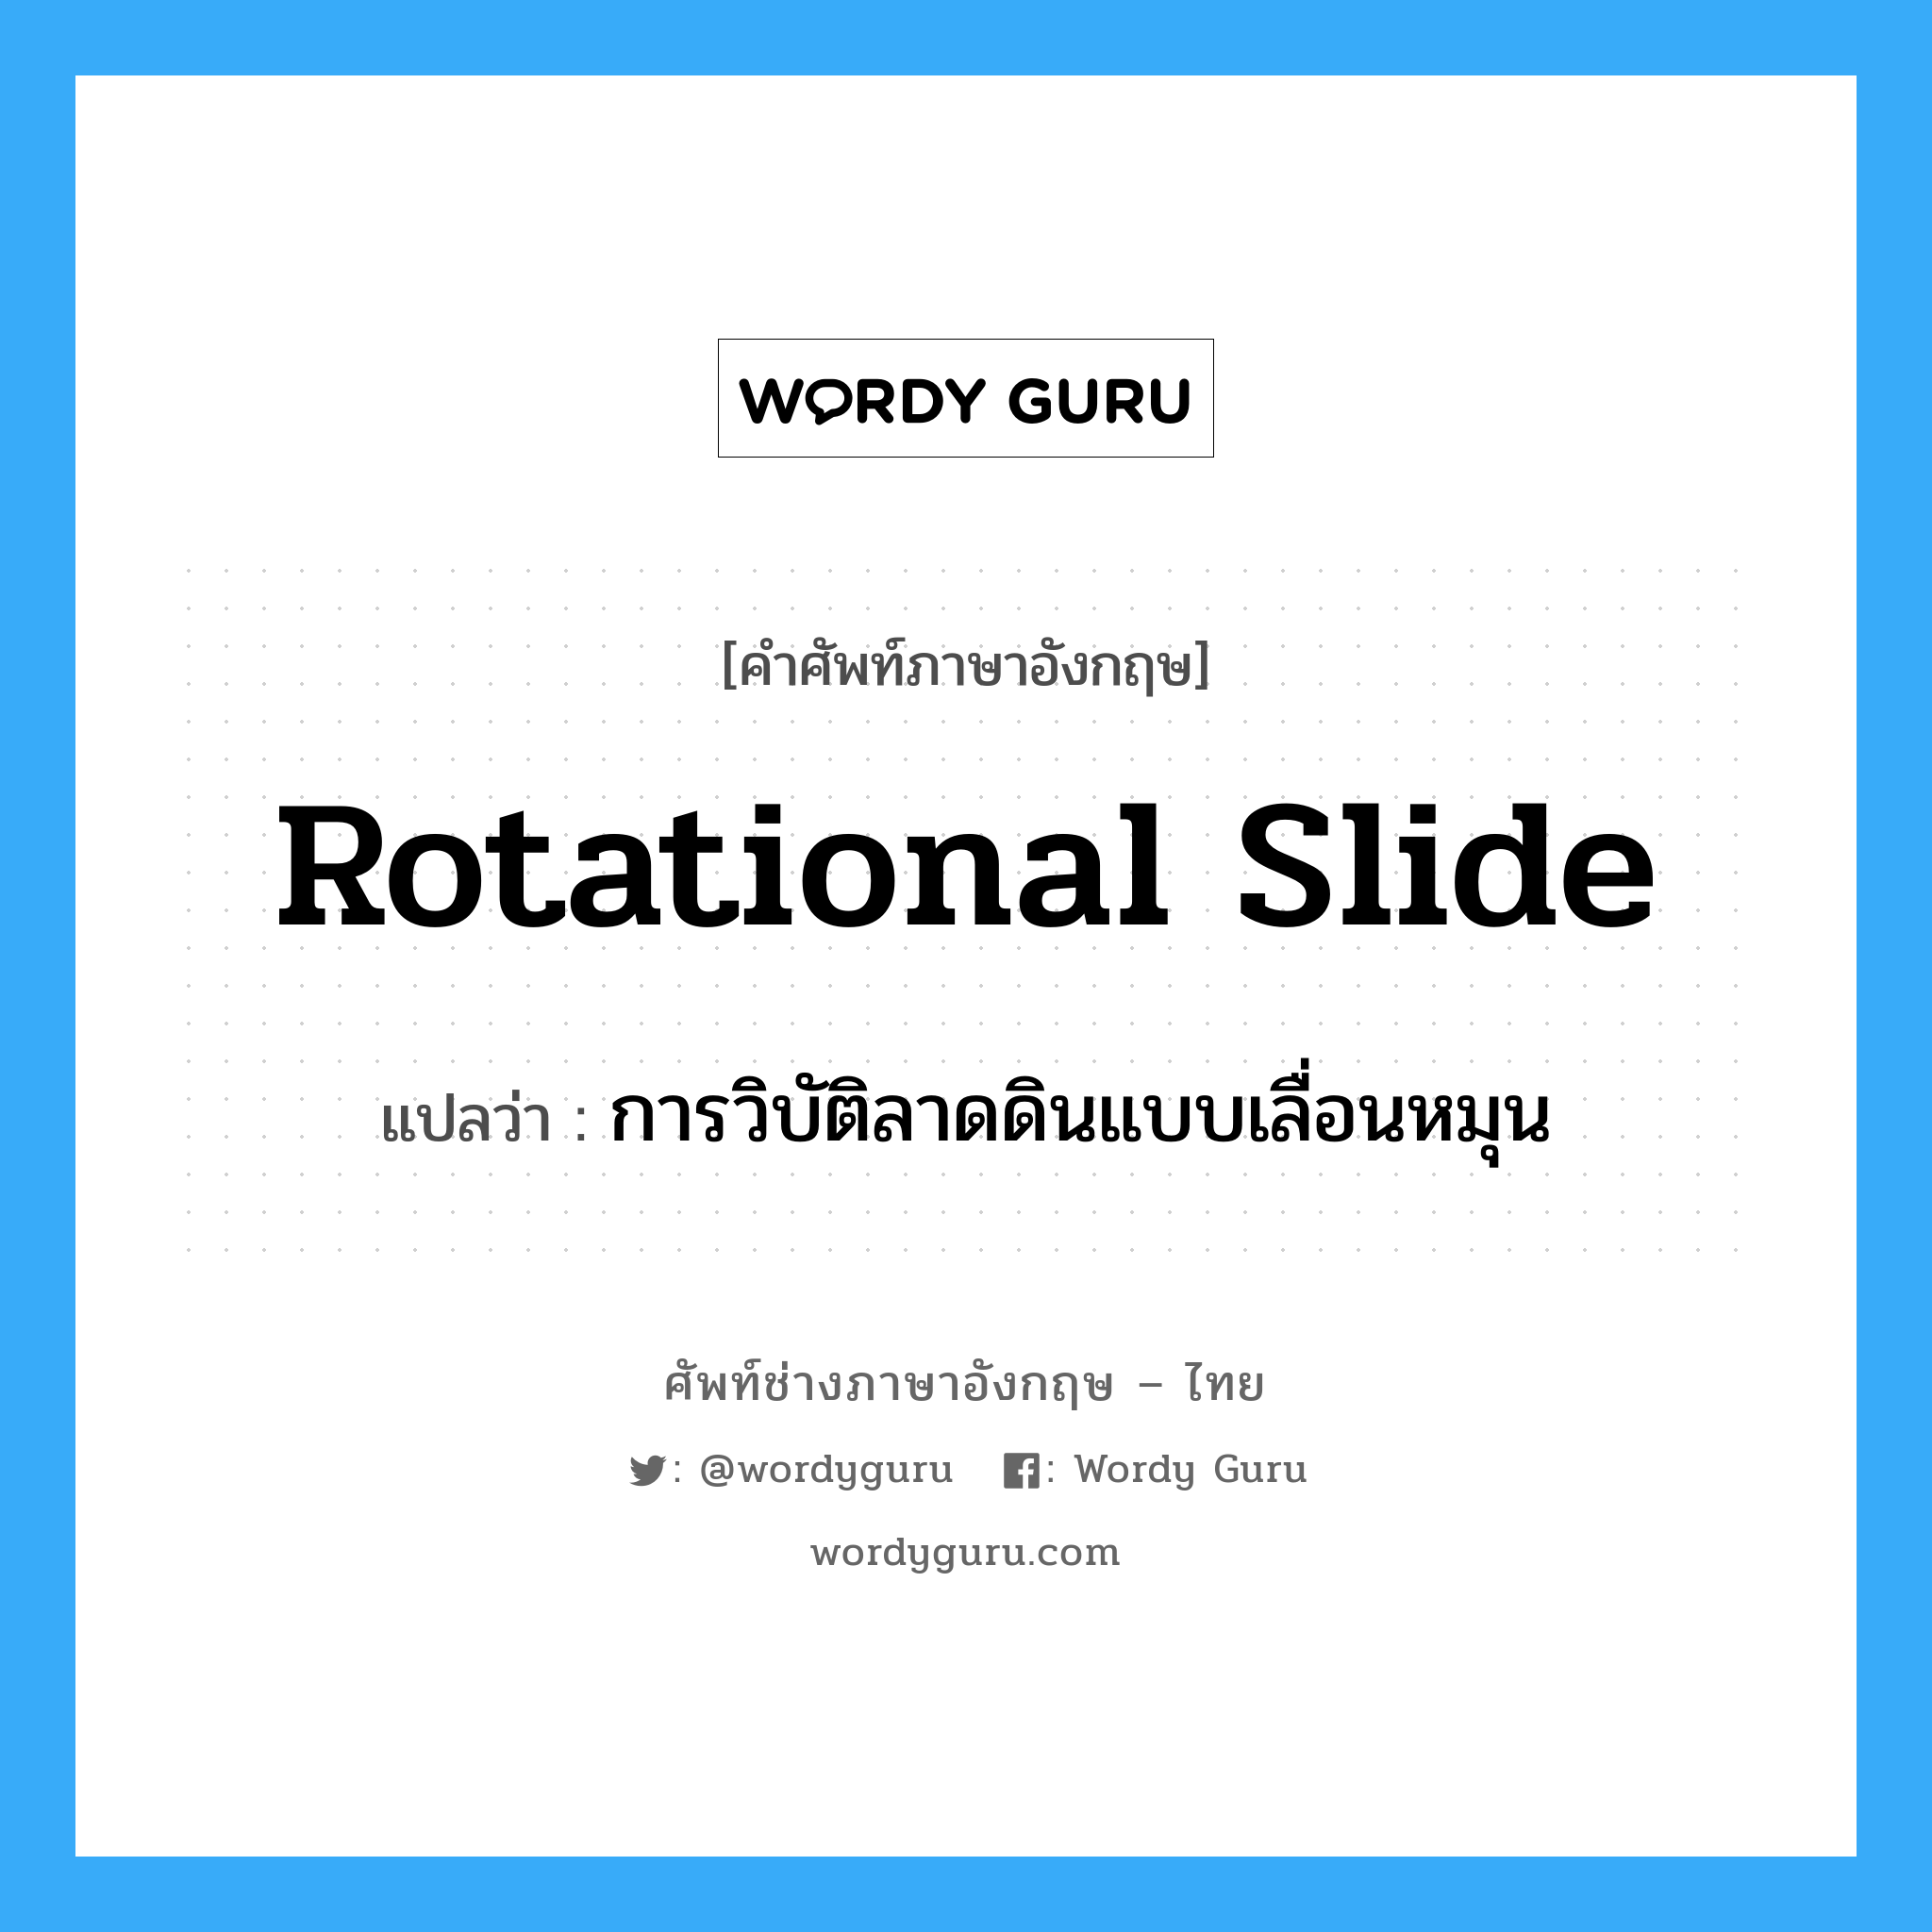 rotational slide แปลว่า?, คำศัพท์ช่างภาษาอังกฤษ - ไทย rotational slide คำศัพท์ภาษาอังกฤษ rotational slide แปลว่า การวิบัติลาดดินแบบเลื่อนหมุน